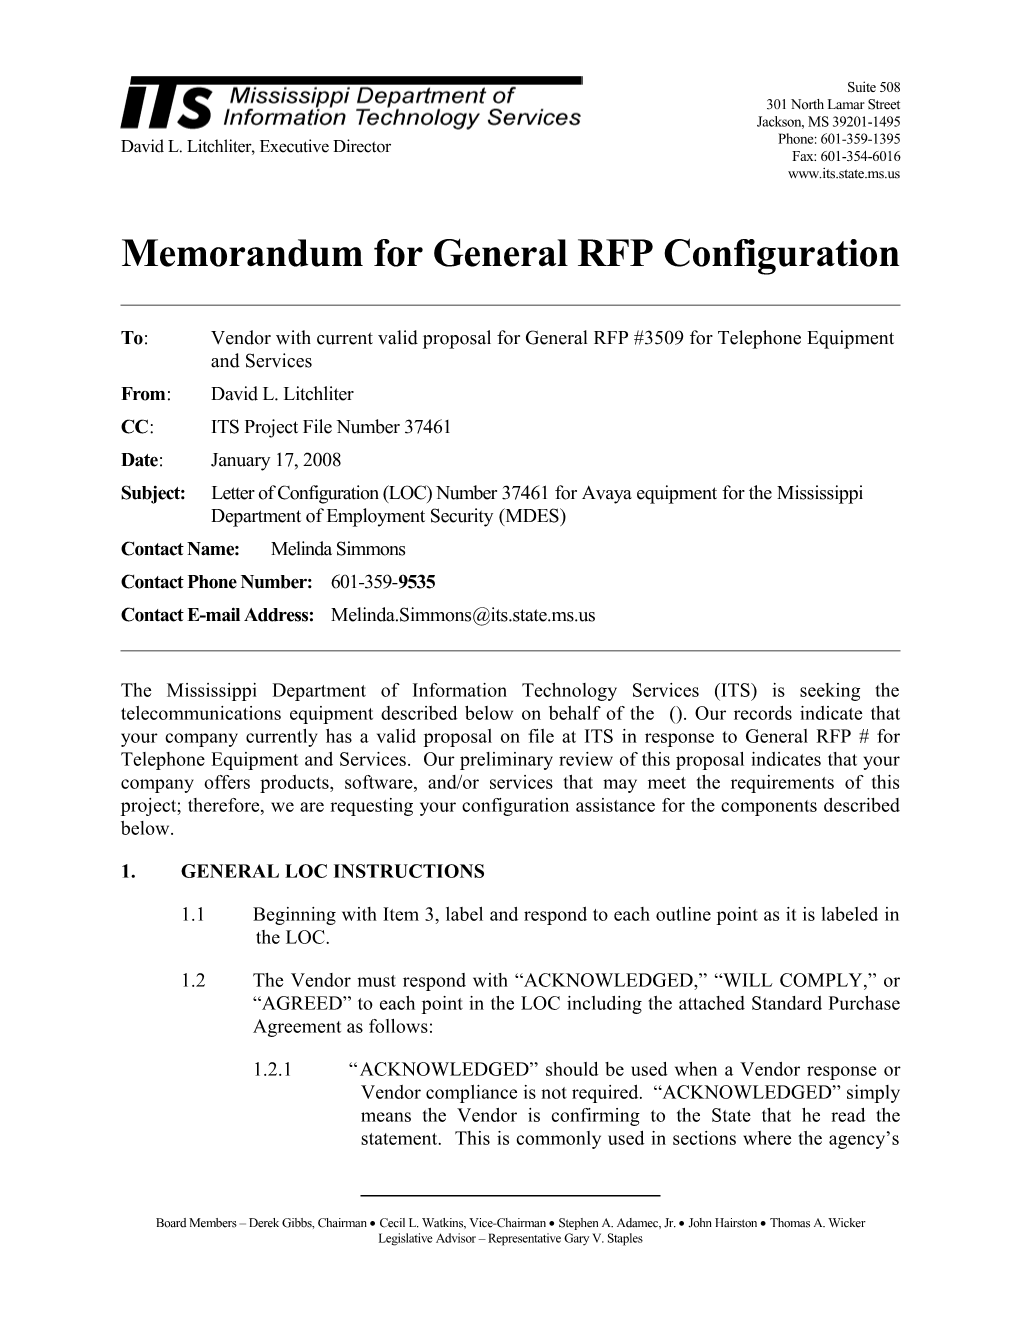 Memorandum for General RFP Configuration s3